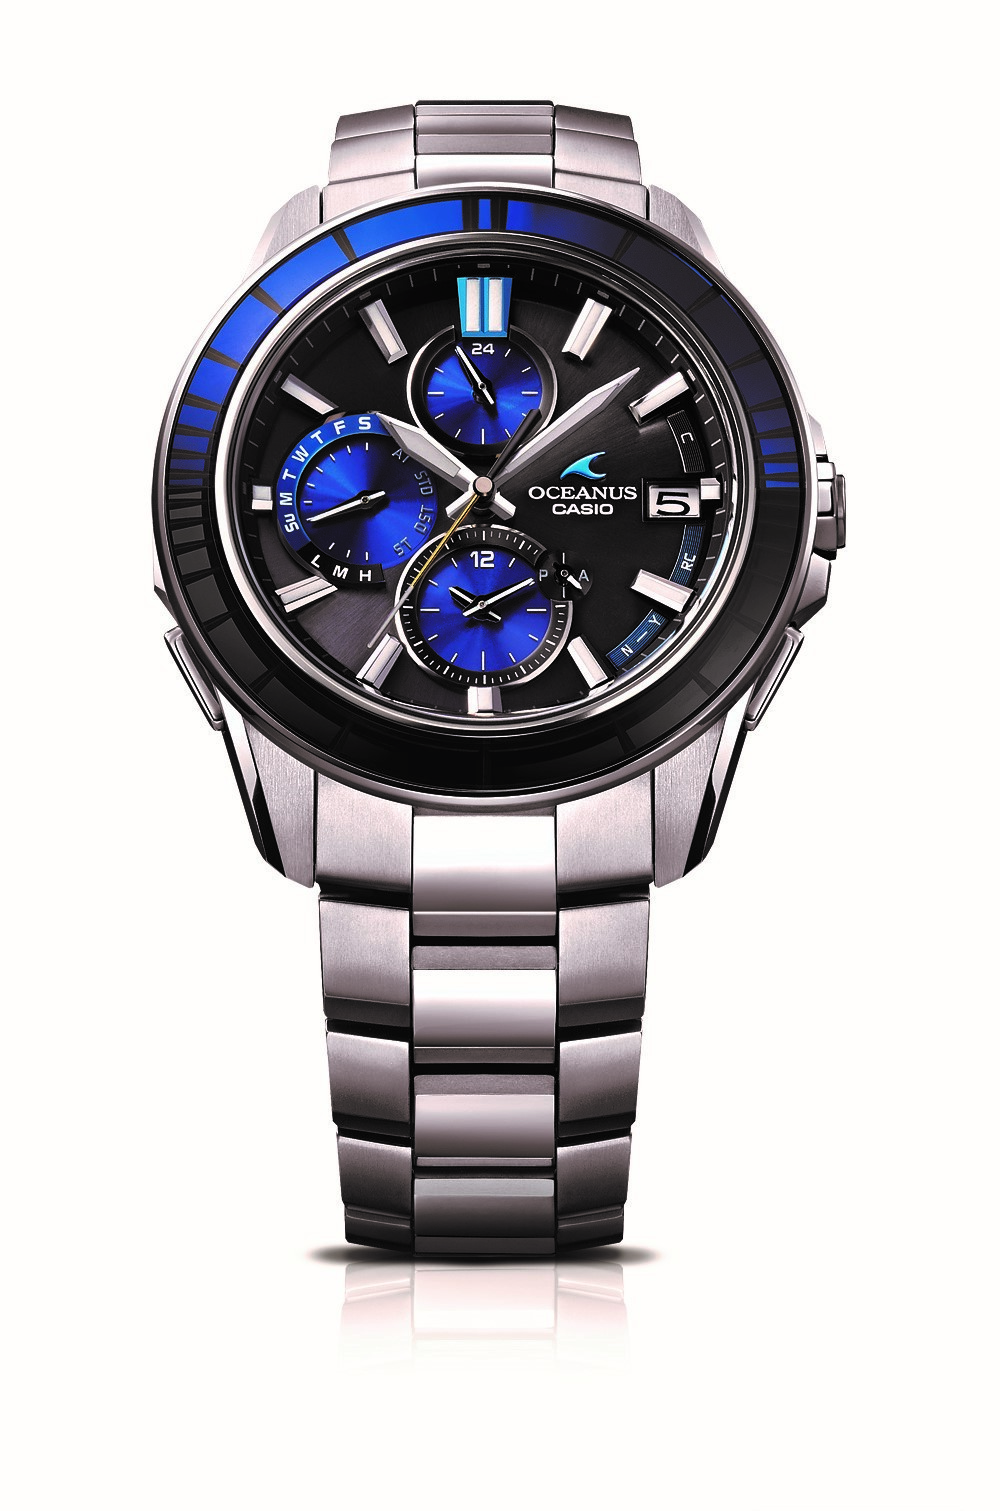 「江戸切子」細工の腕時計1500本限定　カシオ「オシアナス」ブランド新モデル